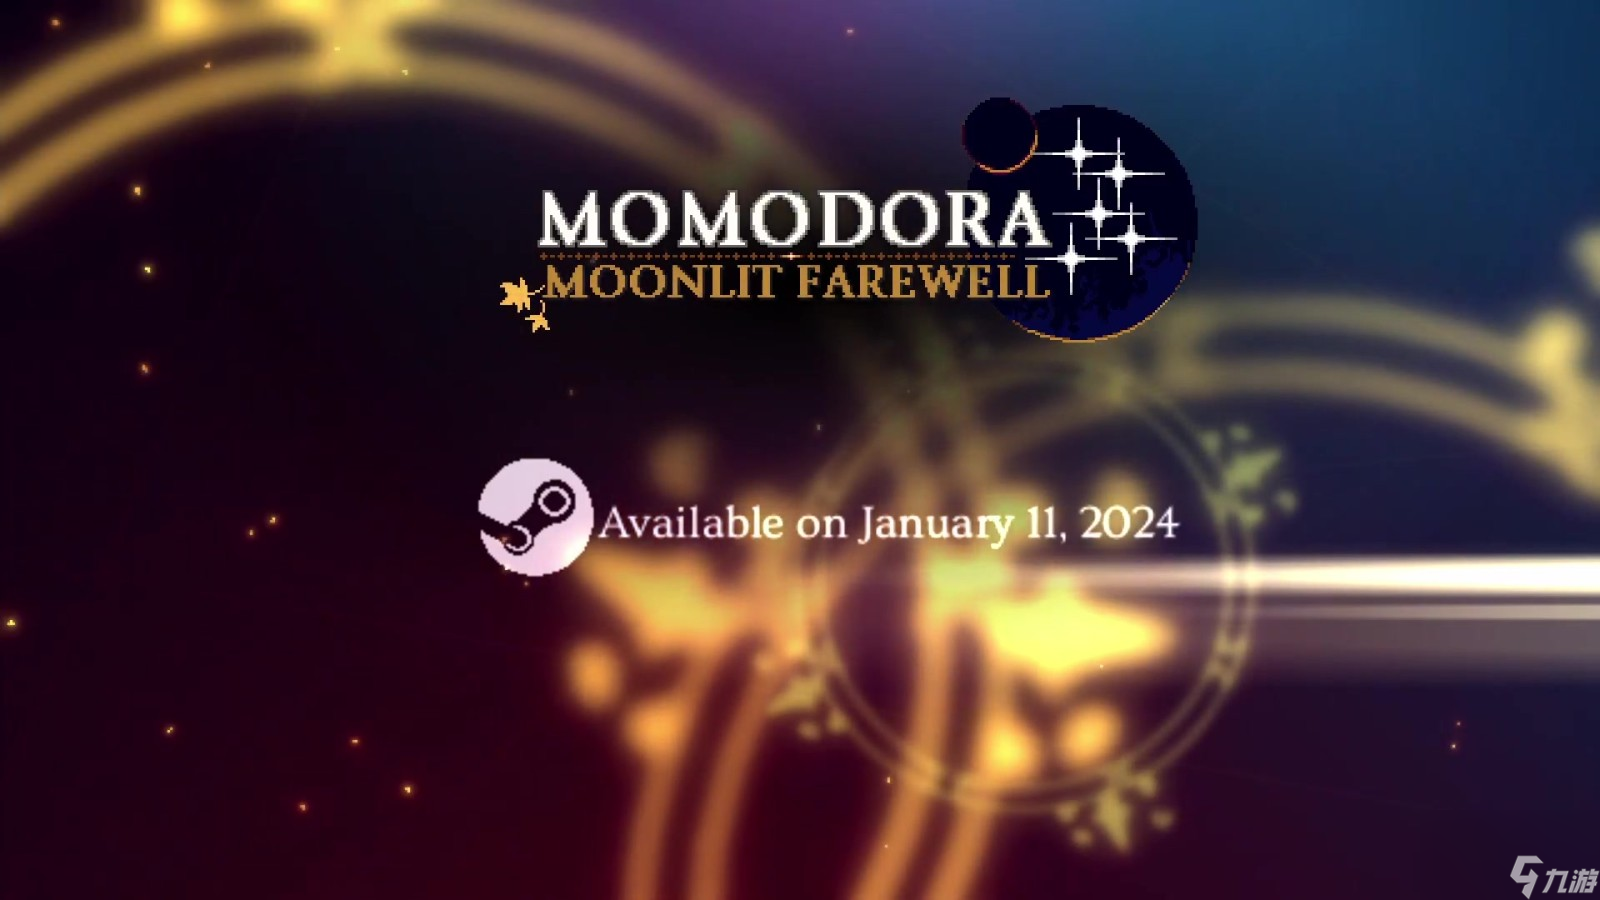 《莫莫多拉: 月下告别》将于2024年1月11日推出